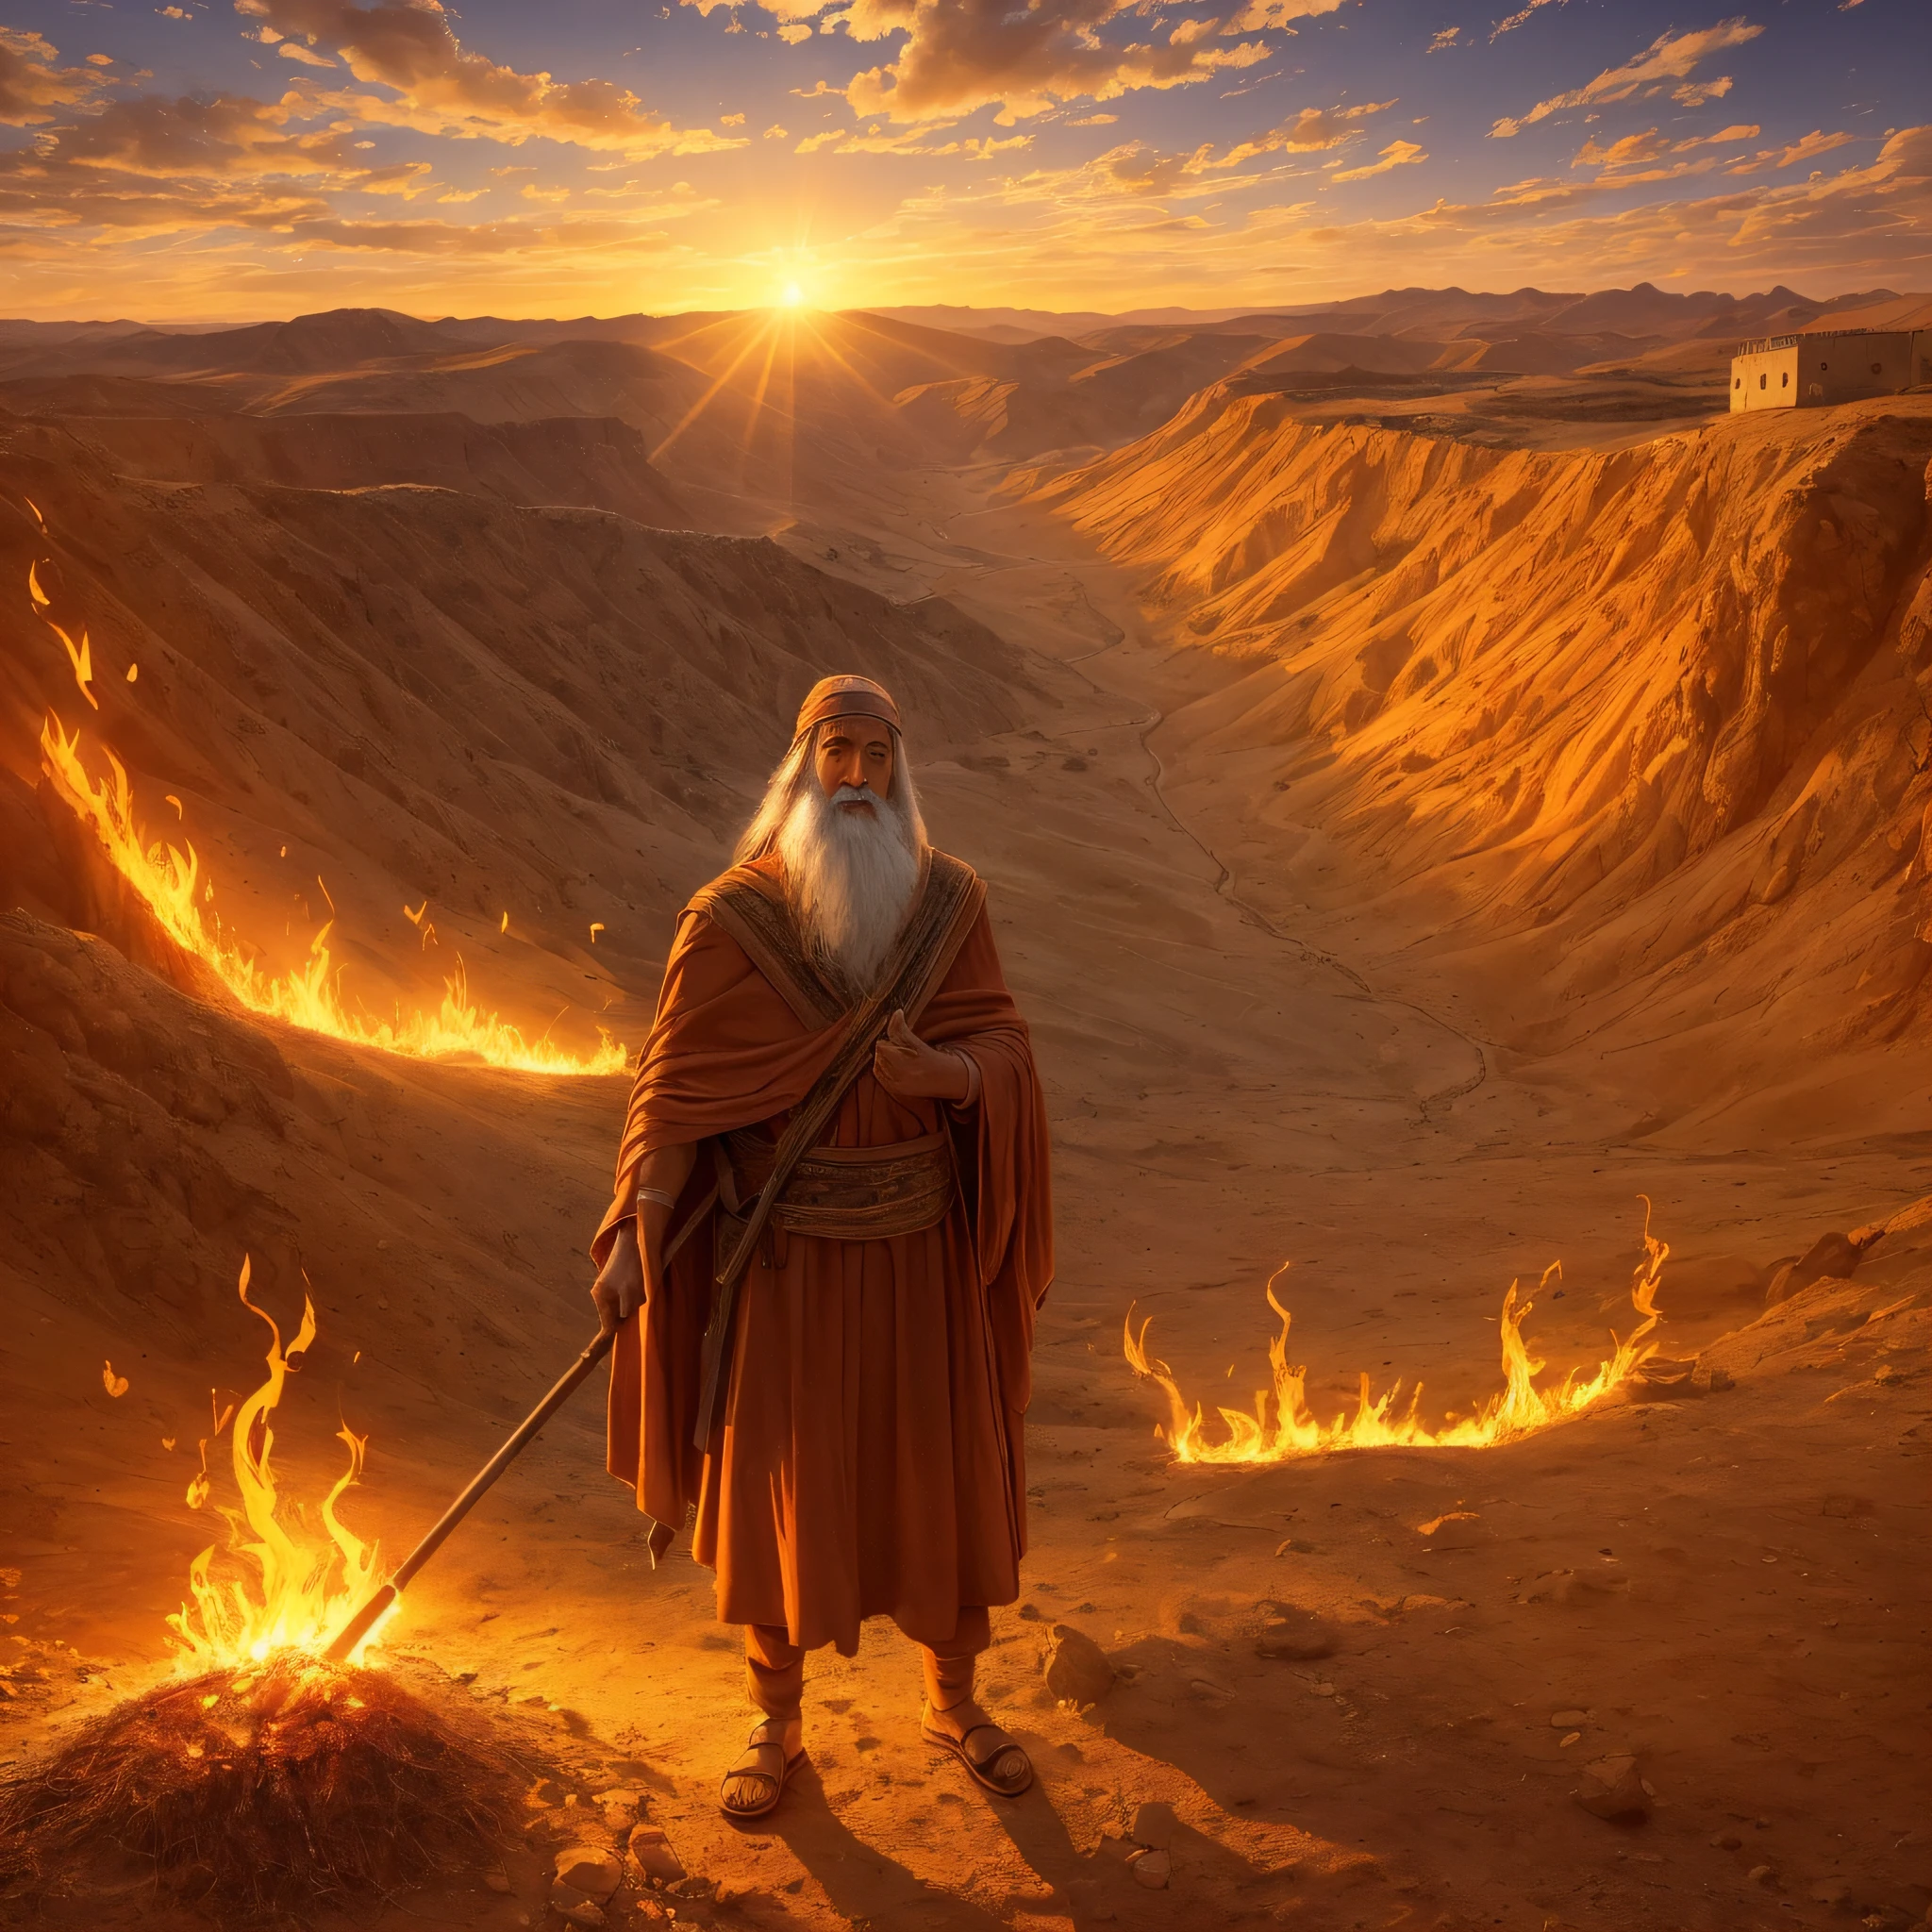 摩西在何烈山燃燒的灌木叢前. 摩西是一位裝扮成牧羊人的老人. 灌木叢明亮, 充滿活力的火焰, 但它不會被火燒毀. 摩西驚訝又欽佩地看著灌木叢. 周圍環境為山區、沙漠, 夕陽西下，橘色的燈光照亮了場景. 這個圖像代表了摩西被上帝召喚來拯救以色列人民的那一刻. --自动--s2